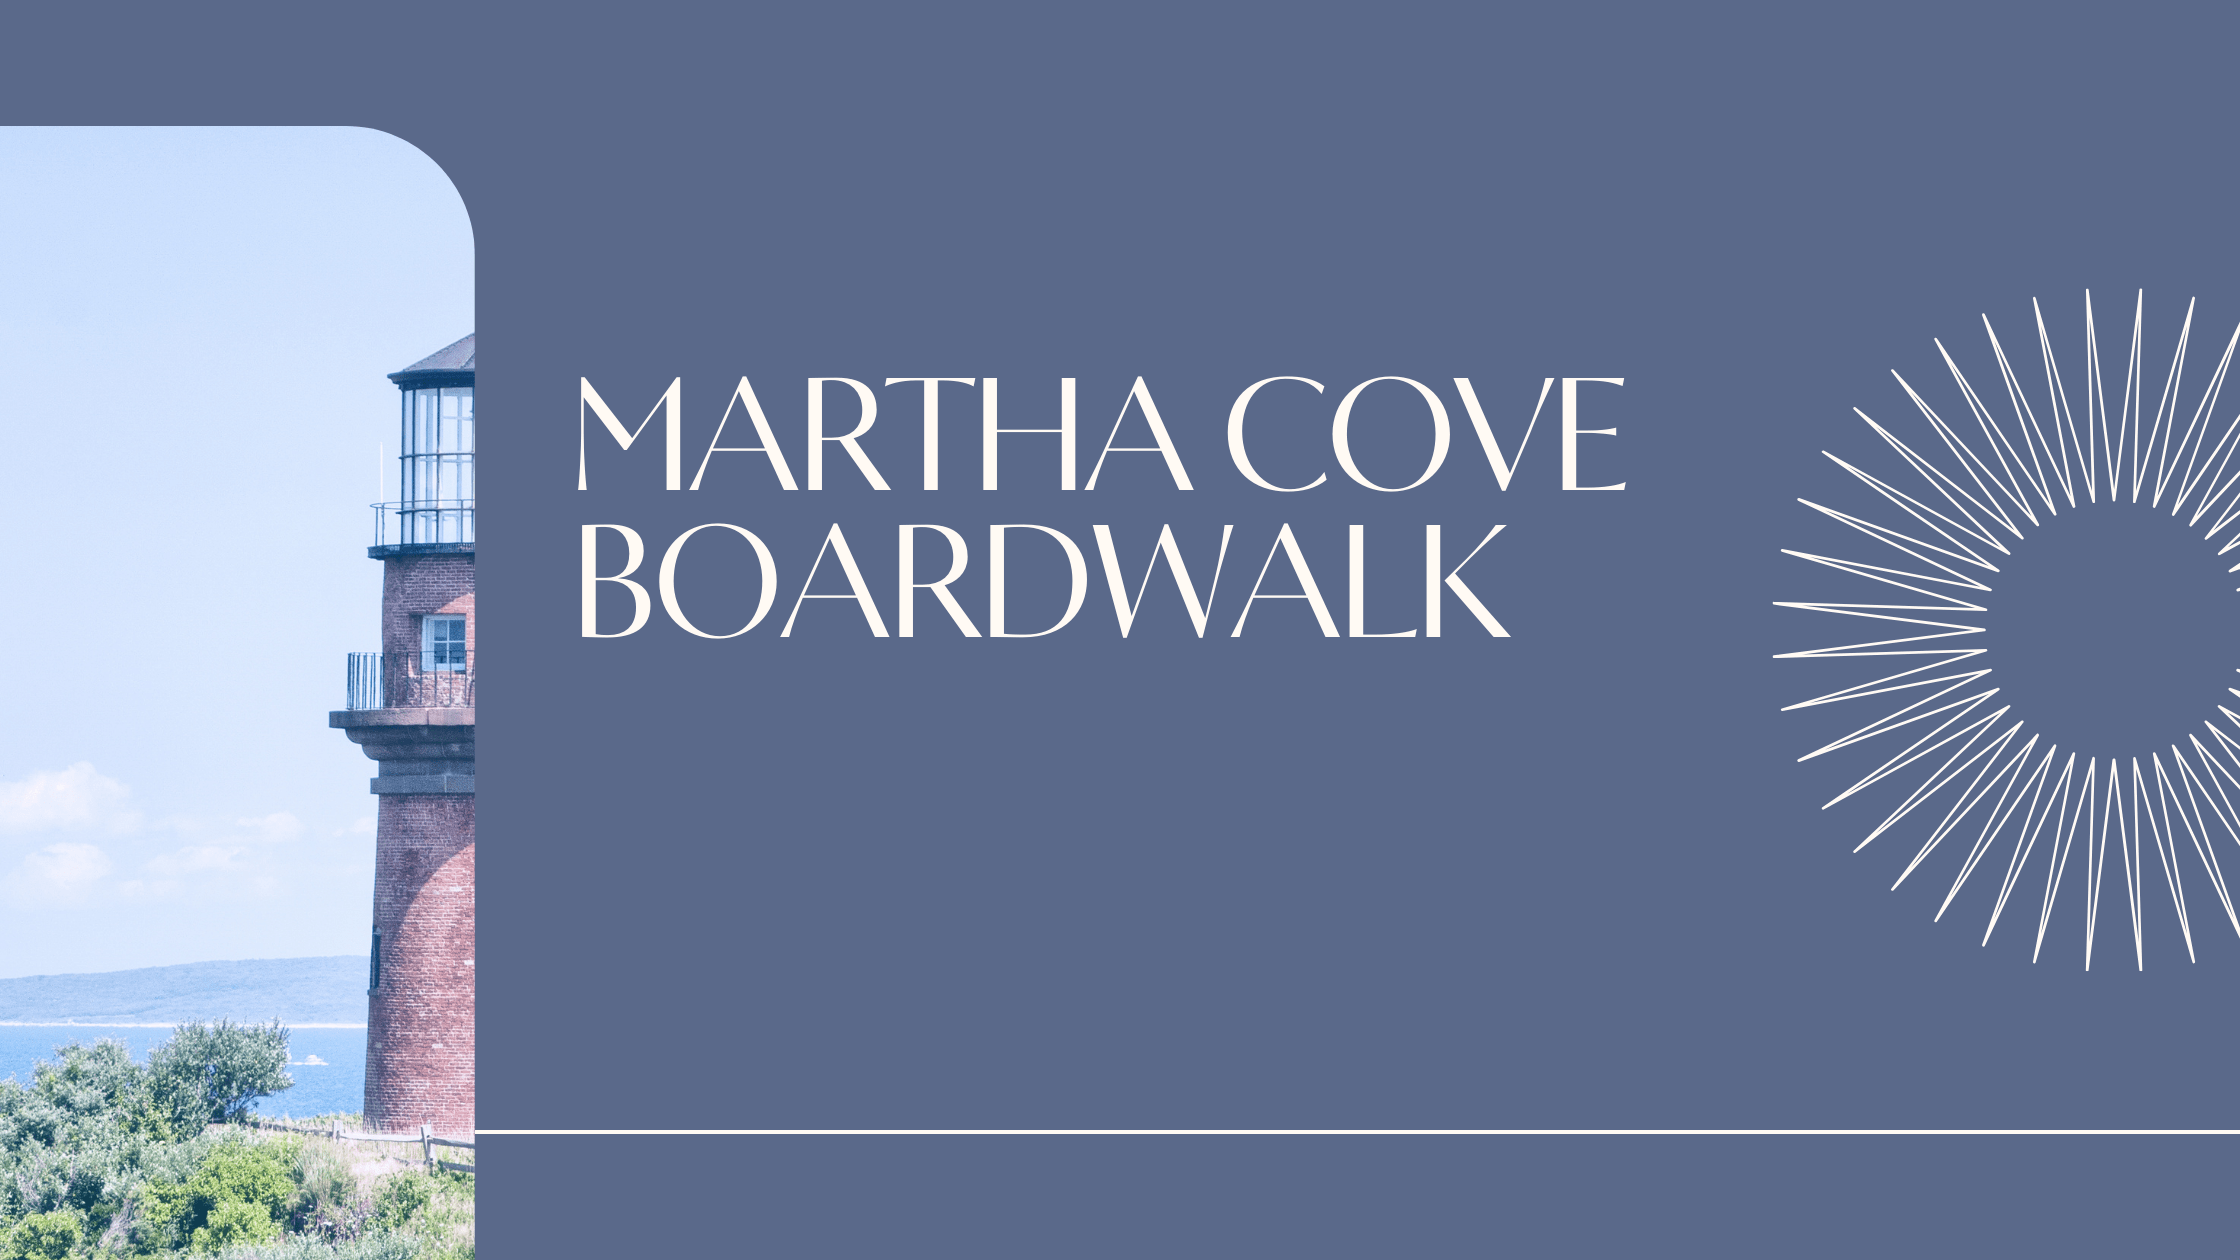 Martha Cove Boardwalk